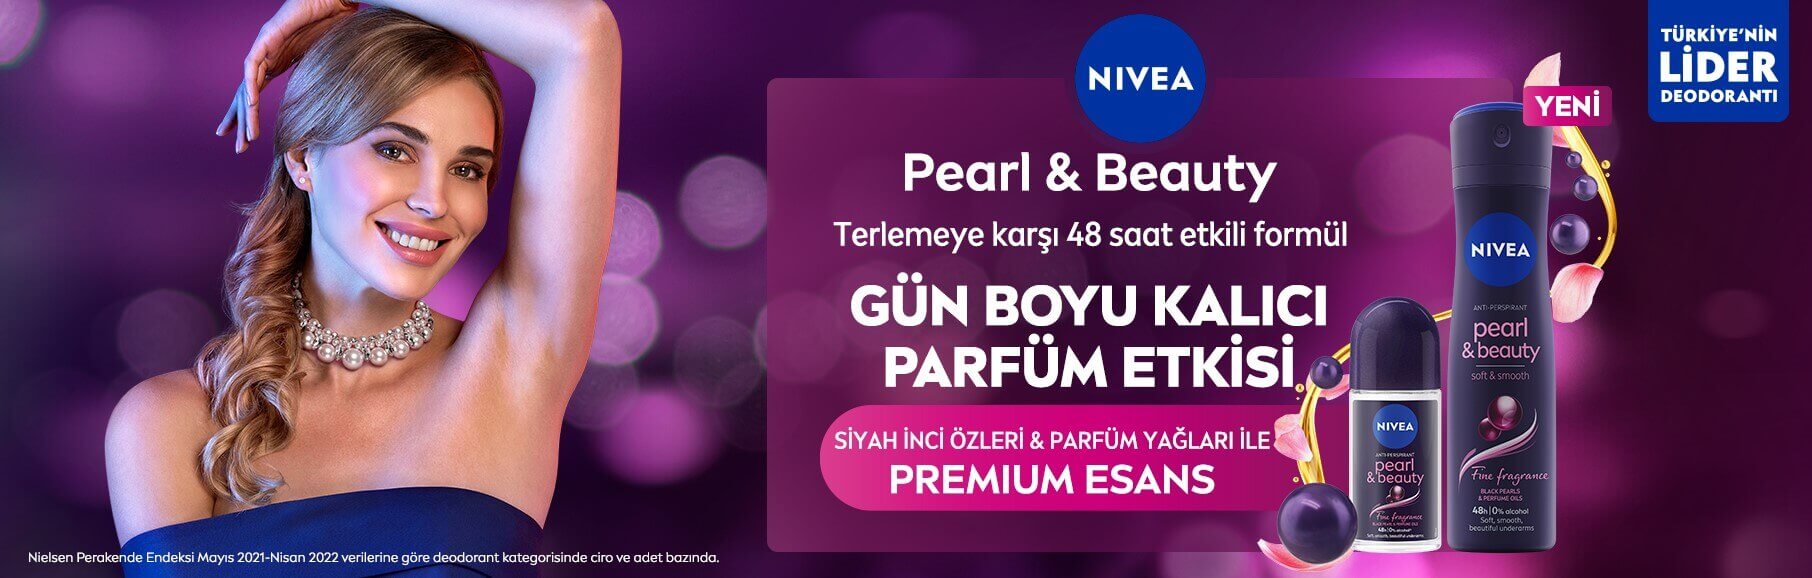 Nivea Pearl & Beauty ile Gün Boyu Kalıcı Parfüm Etkisi Şimdi Tshop.com.tr ve Tshop Mağazalarında